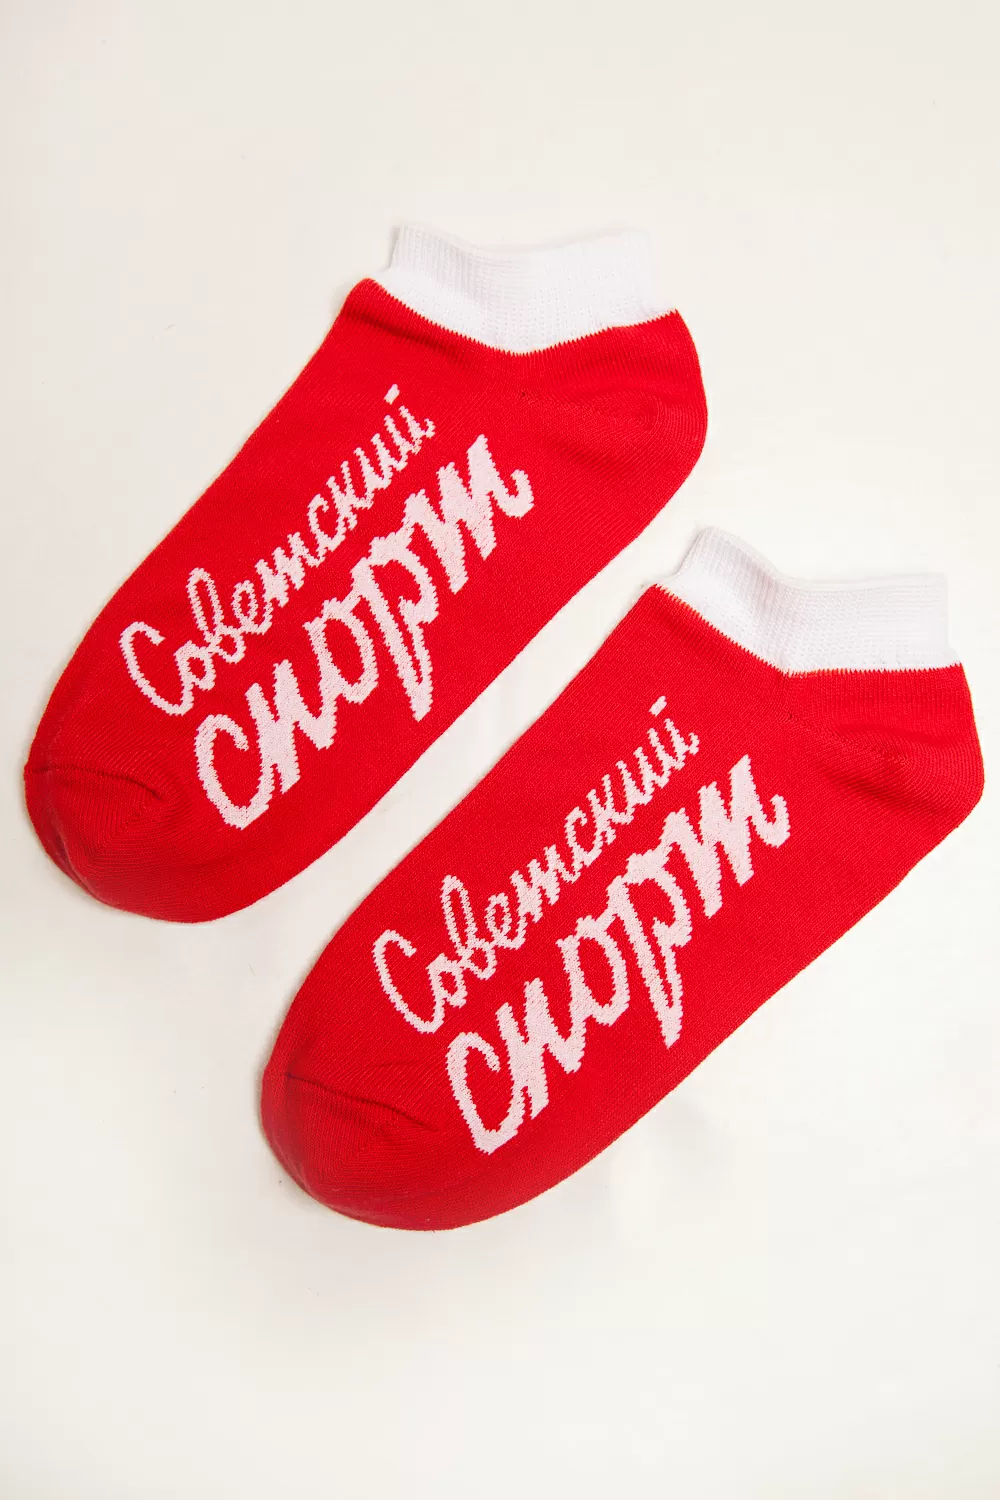 Носки Запорожец Советский спорт короткие женские (Красный)